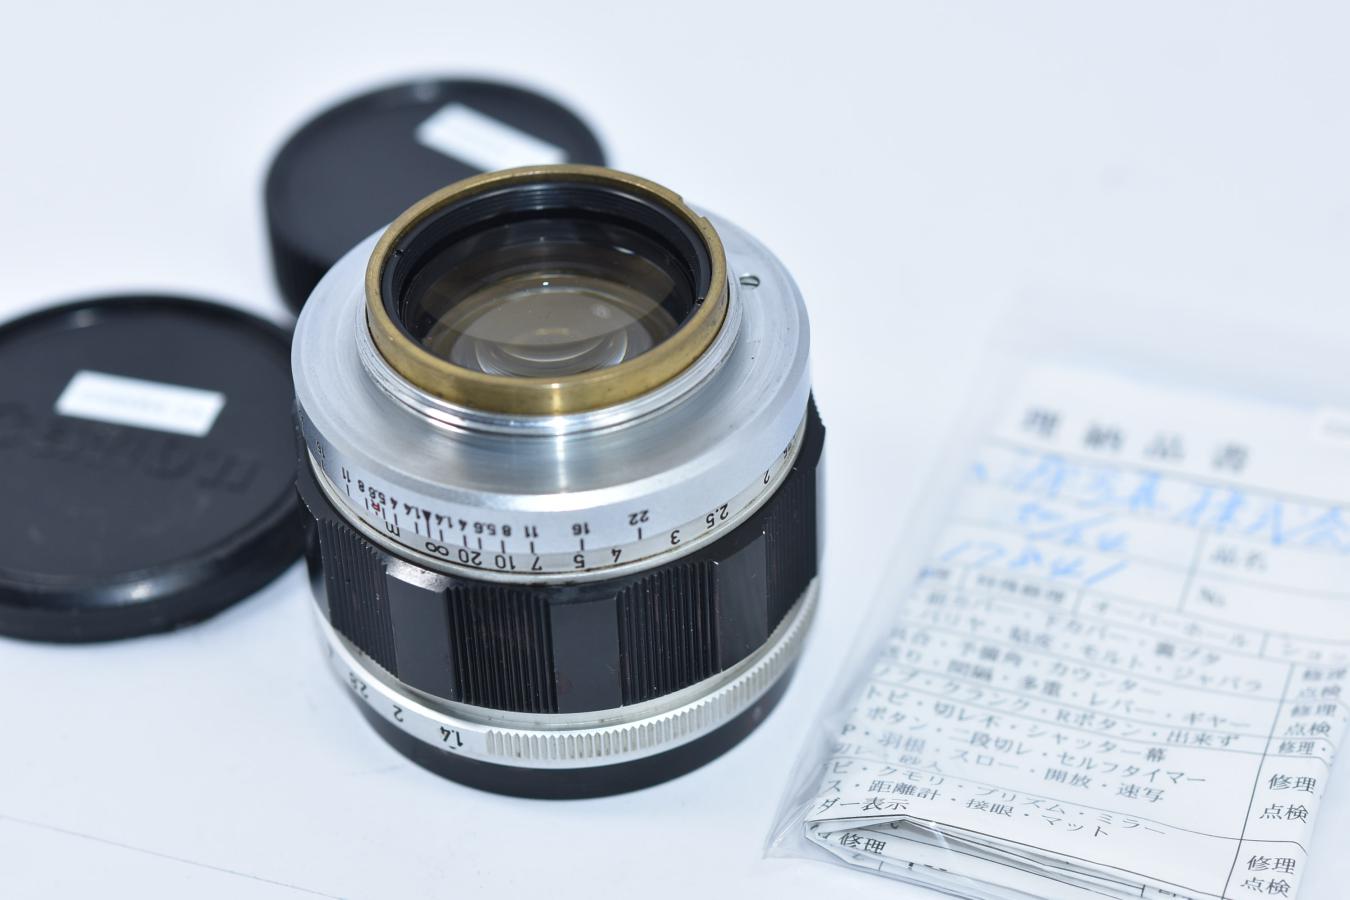 カメラ レンズ(単焦点) キヤノン Canon 50mm F1.4 整備済【ライカLマウントレンズ】 カメラの 